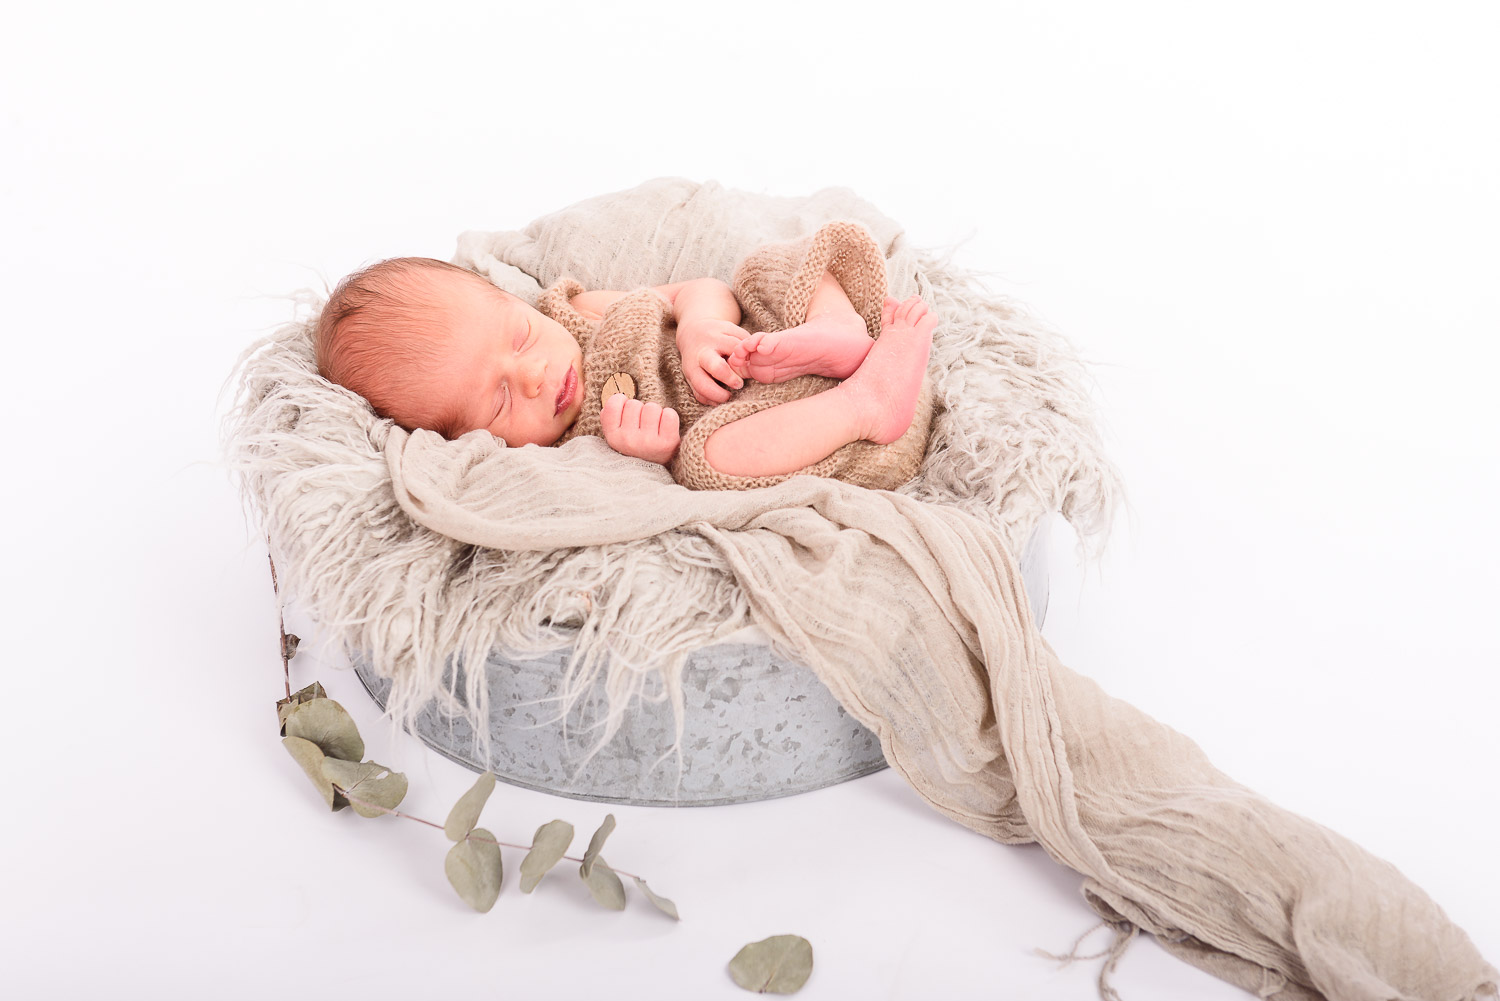 Neugeborenes-Baby-liegt-schlafend-in-einer-Schale-mit-Fell-und-Tuch